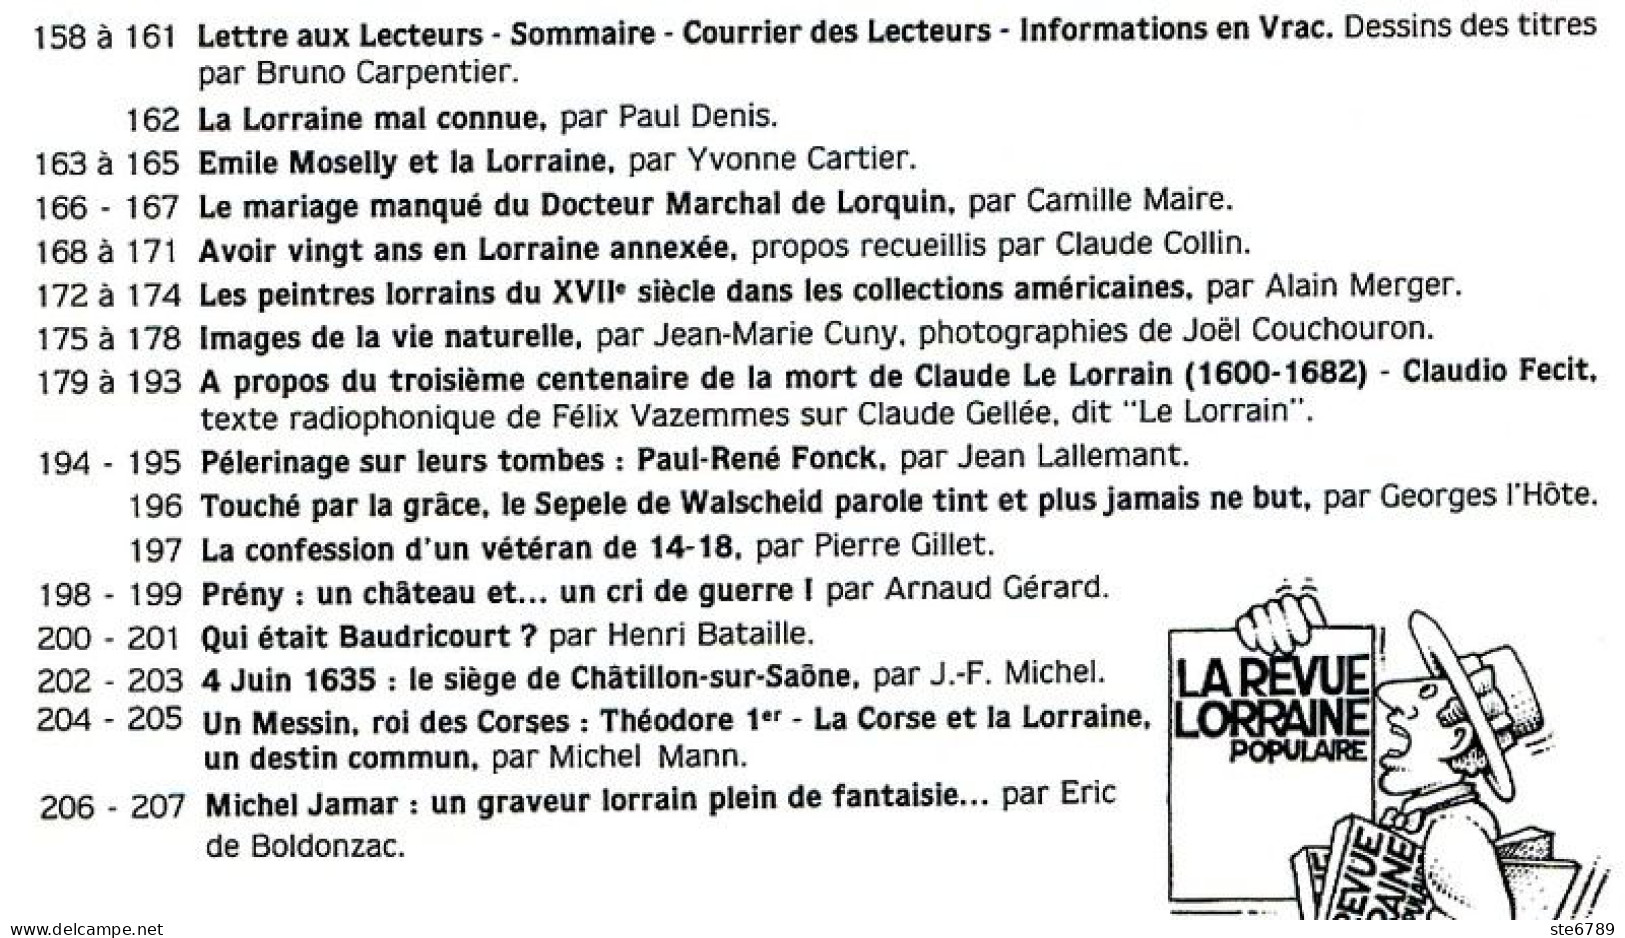 LA REVUE LORRAINE POPULAIRE N° 46 1982 Emile Moselly , Baudricourt , Prény , Chatillon S Saone , Michel  Jamar - Lorraine - Vosges